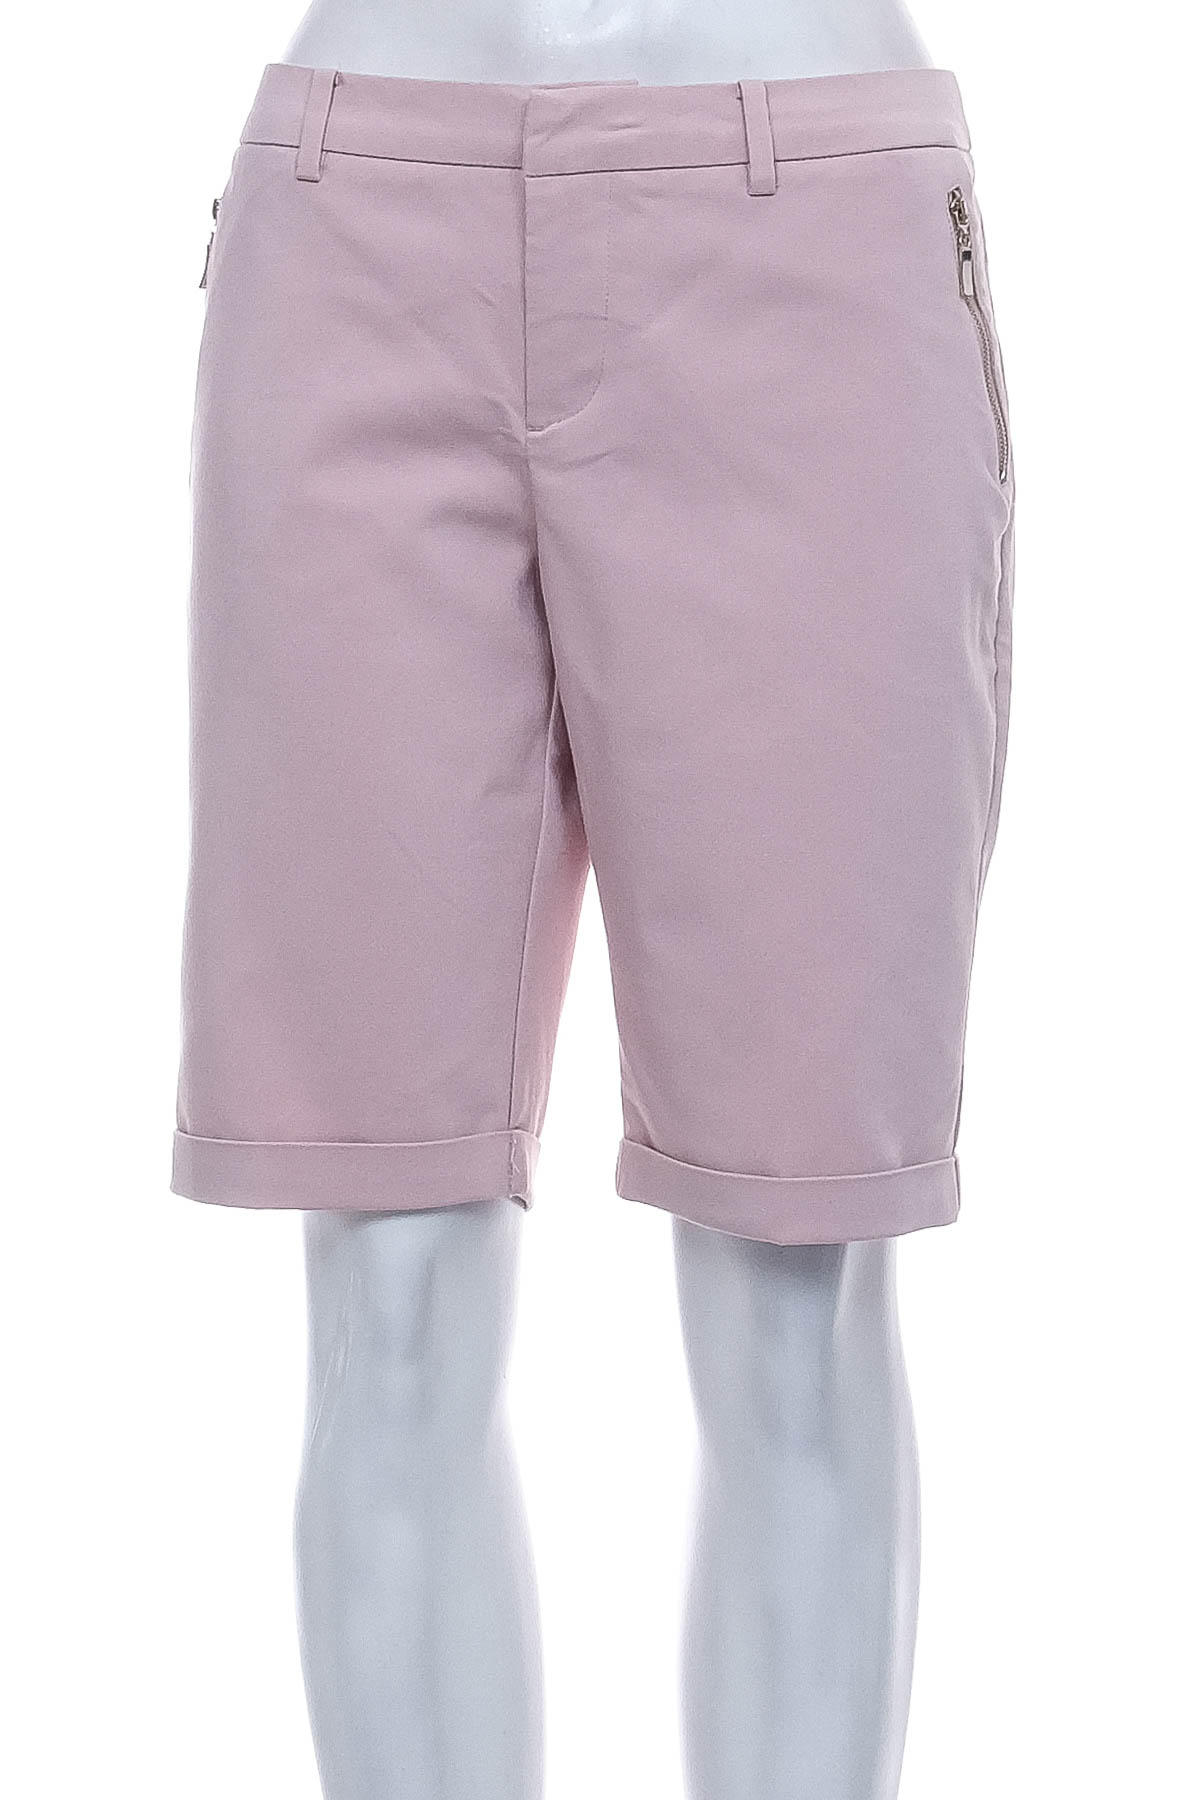 Female shorts - MOHITO - 0